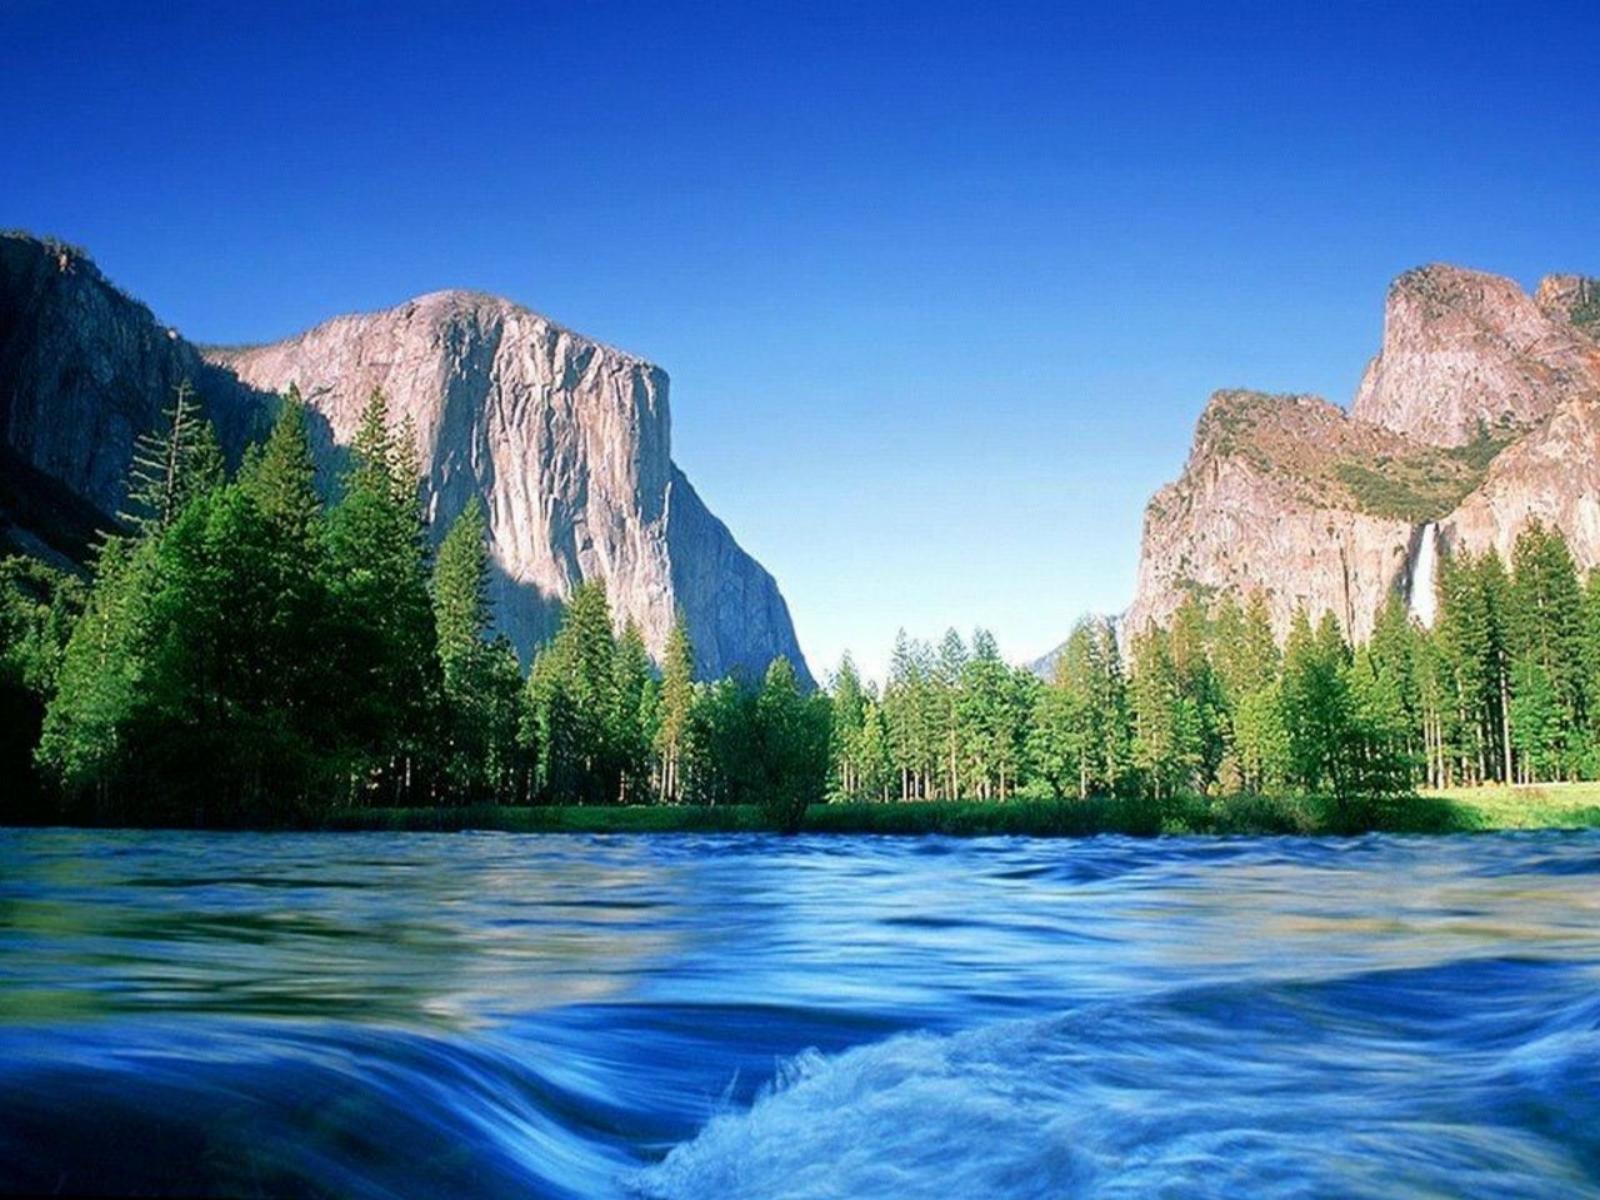 River nature cool desktop background widescreen #wallpaper